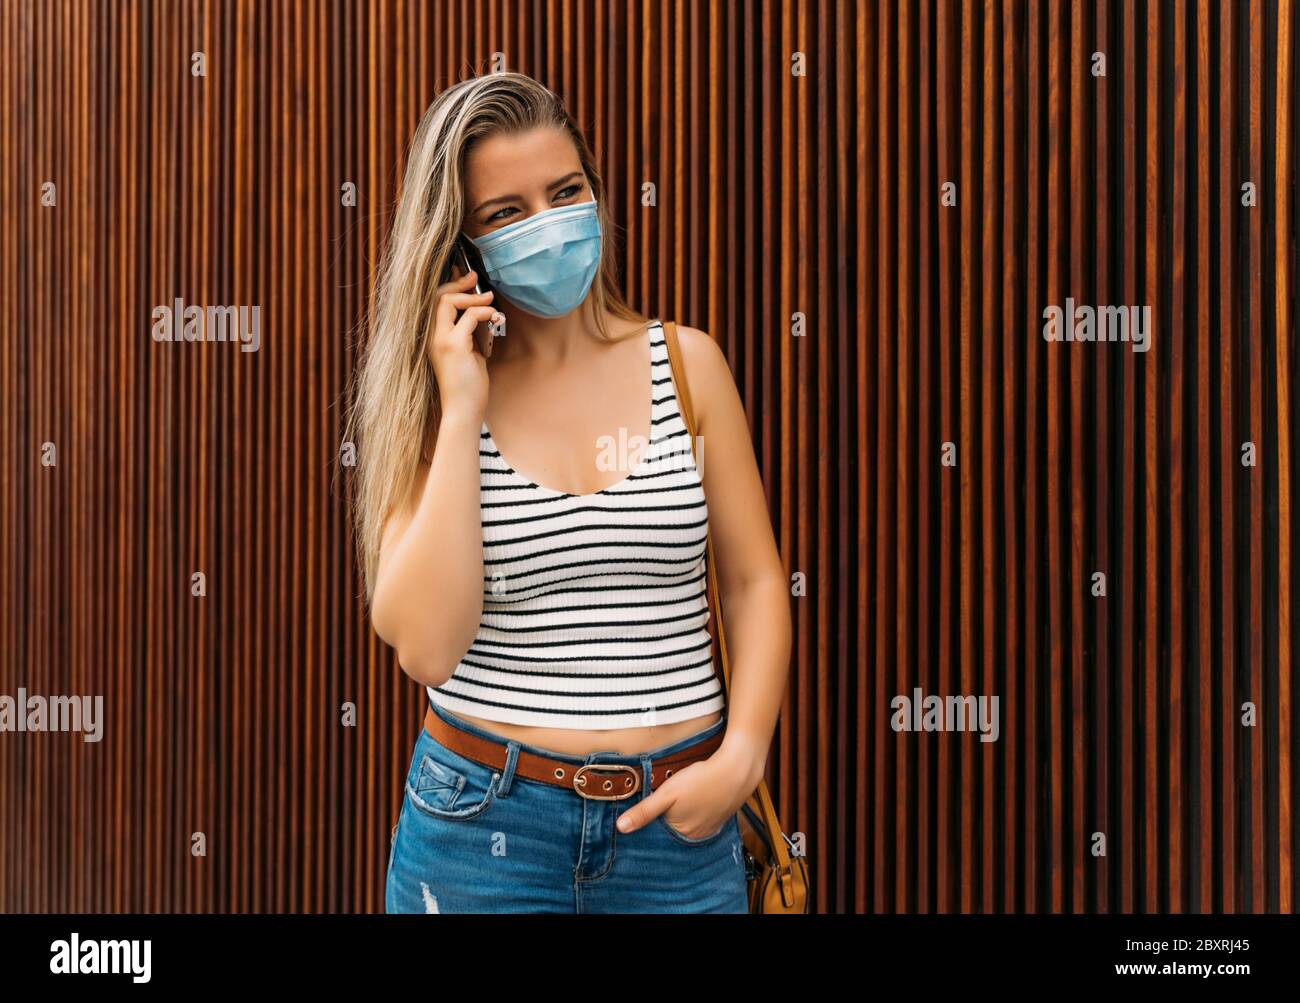 donna in maschera in città utilizzando il suo cellulare durante la pandemia del coronavirus Foto Stock